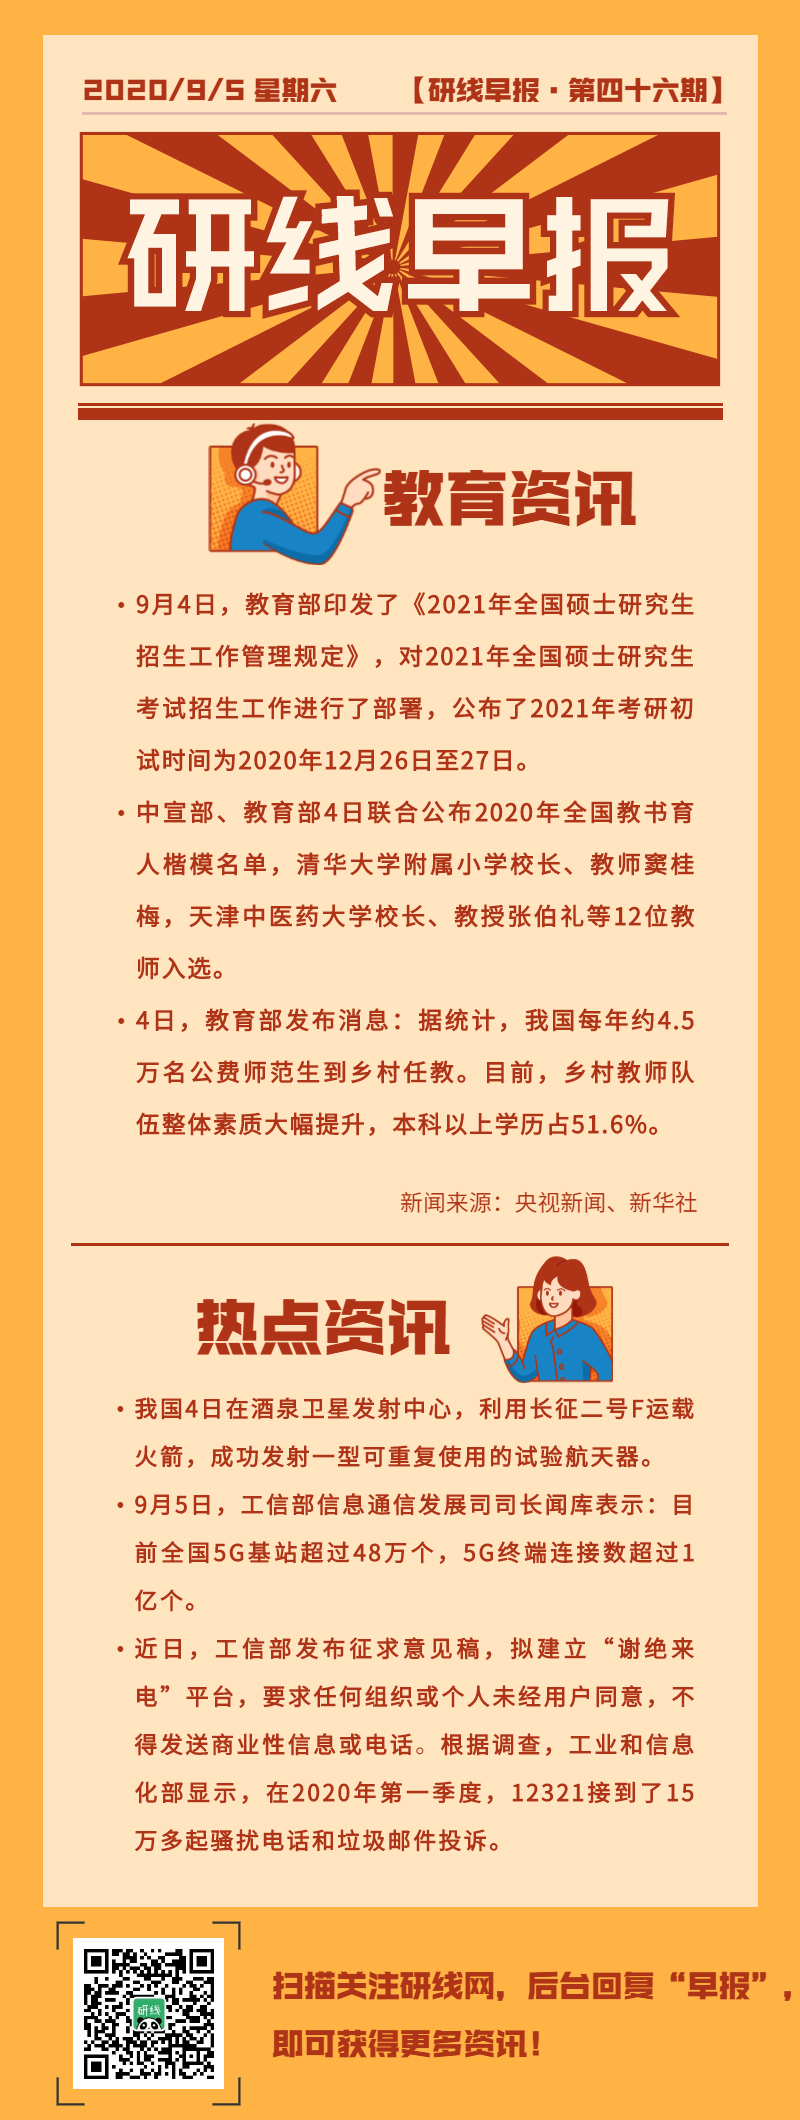 北京城市学院2014年新增3个专业硕士学位点